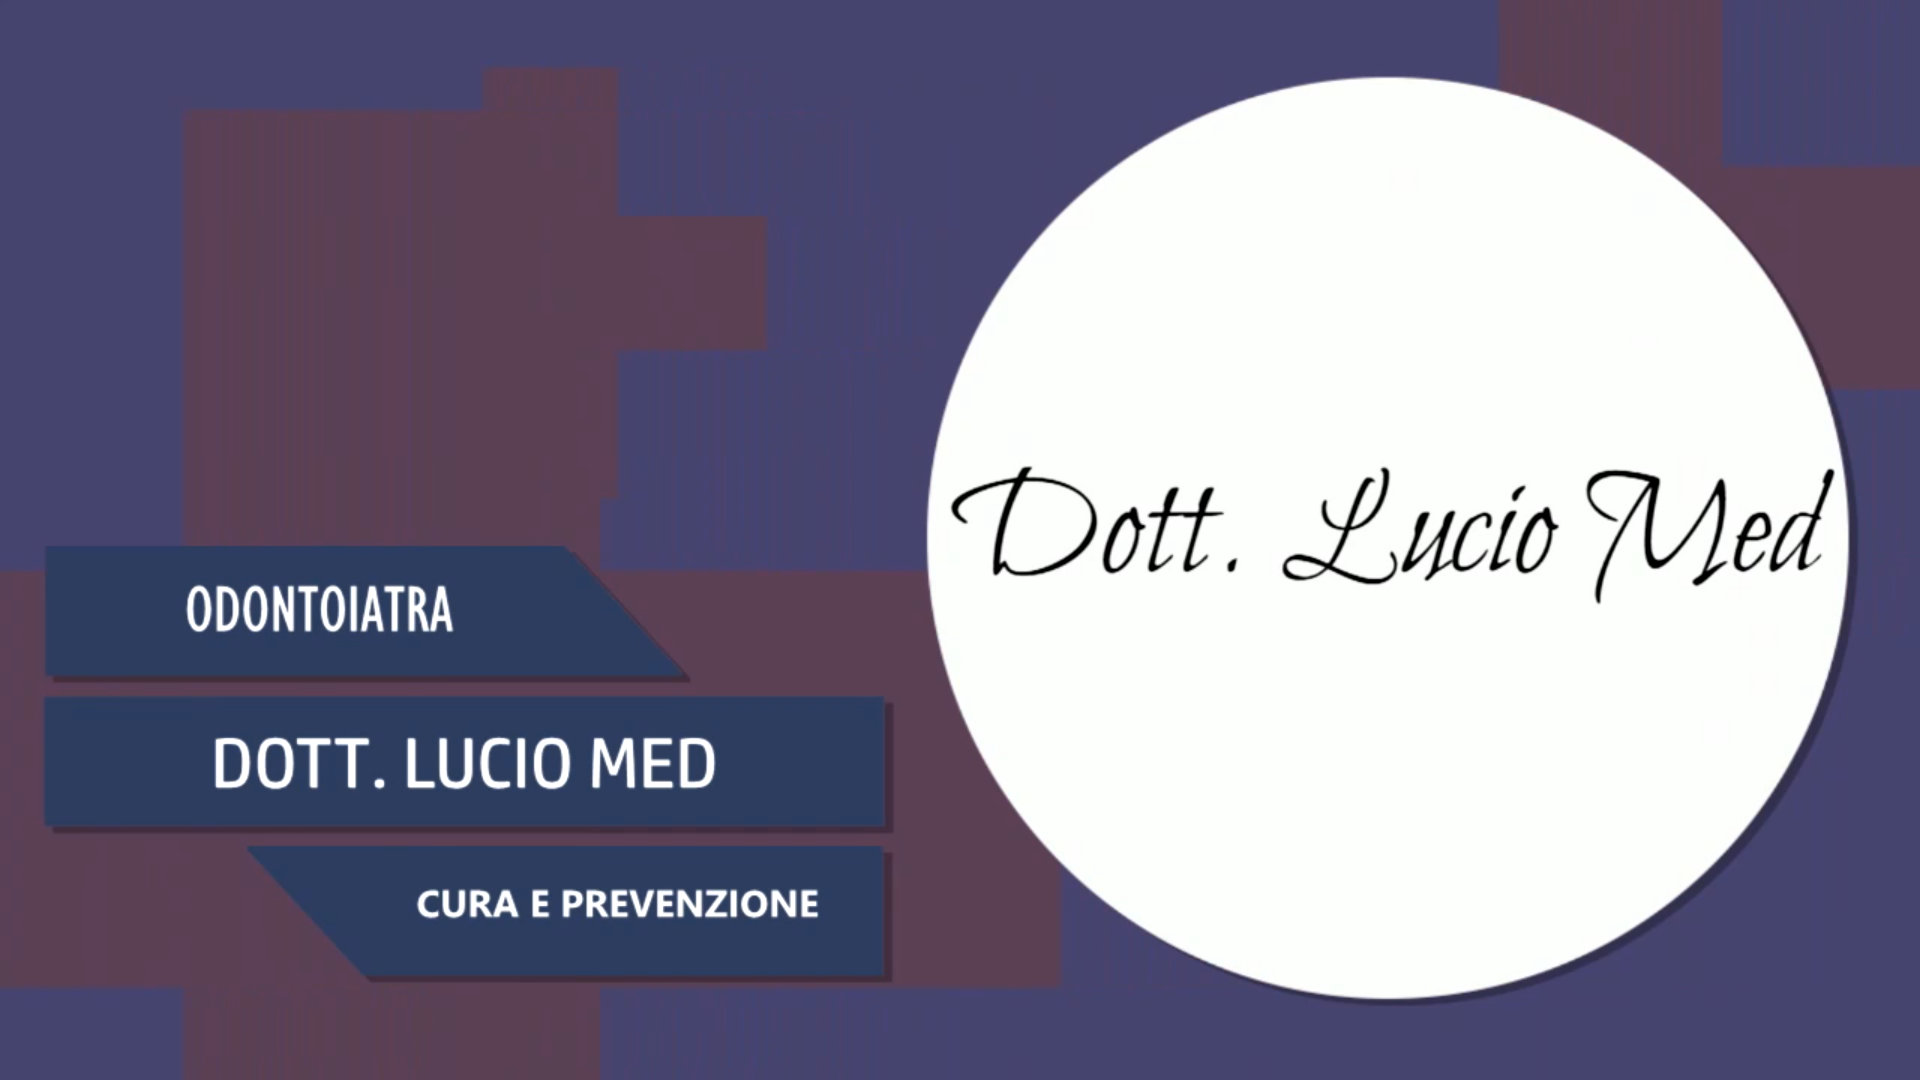 Intervista al Dott. Lucio Med – Cura e prevenzione